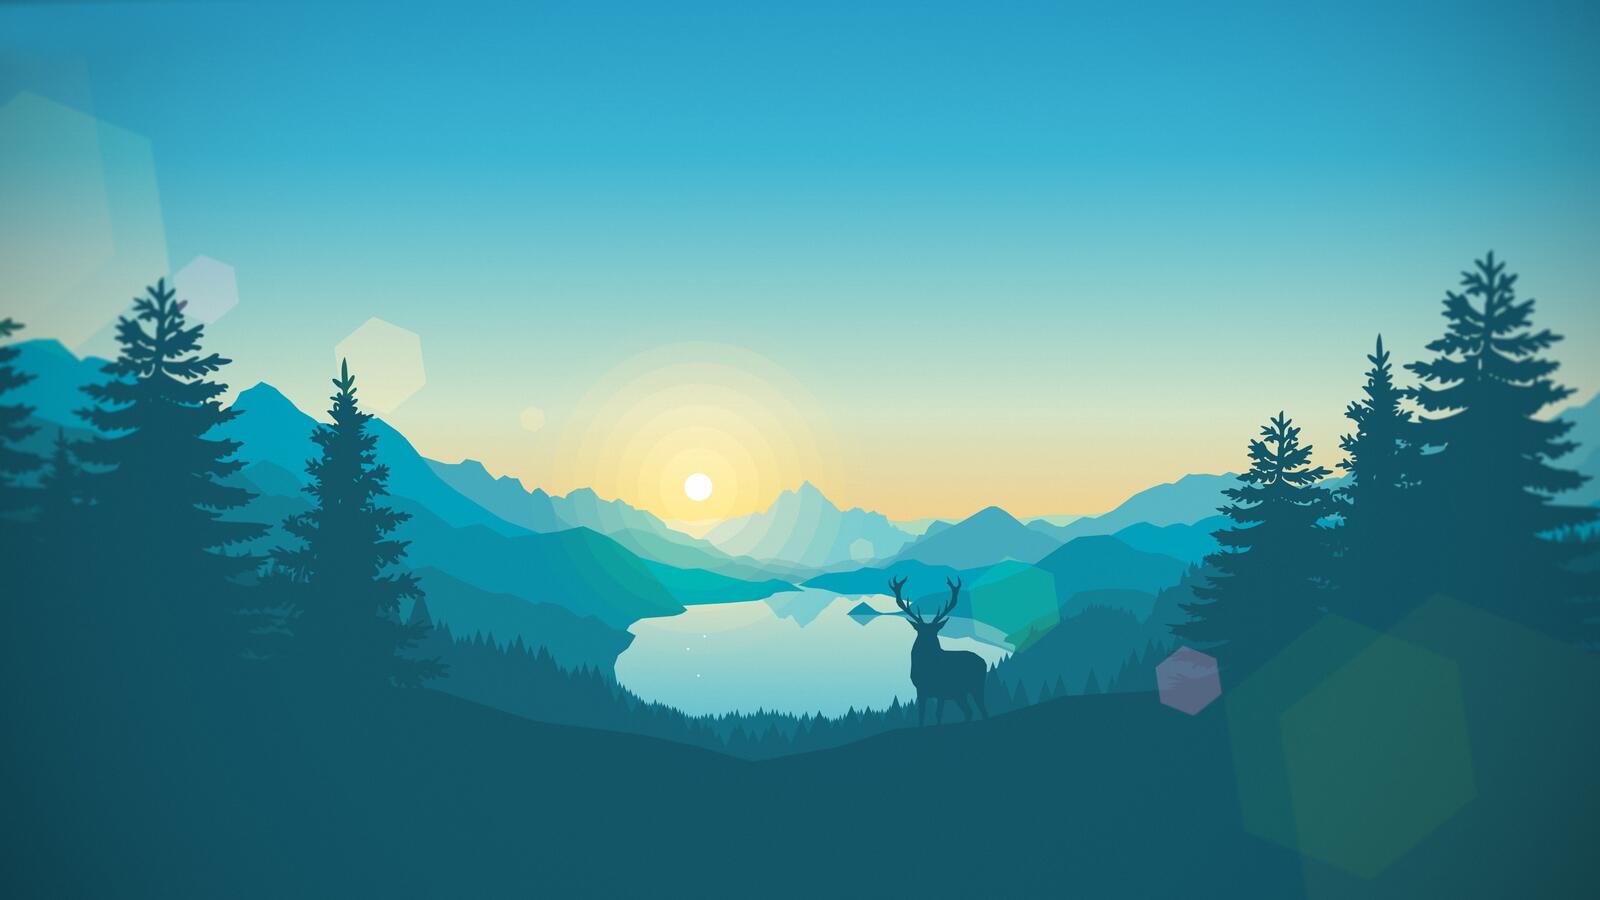 Бесплатное фото Минималистичный пейзаж с олене стоящим в лесу на фоне озера